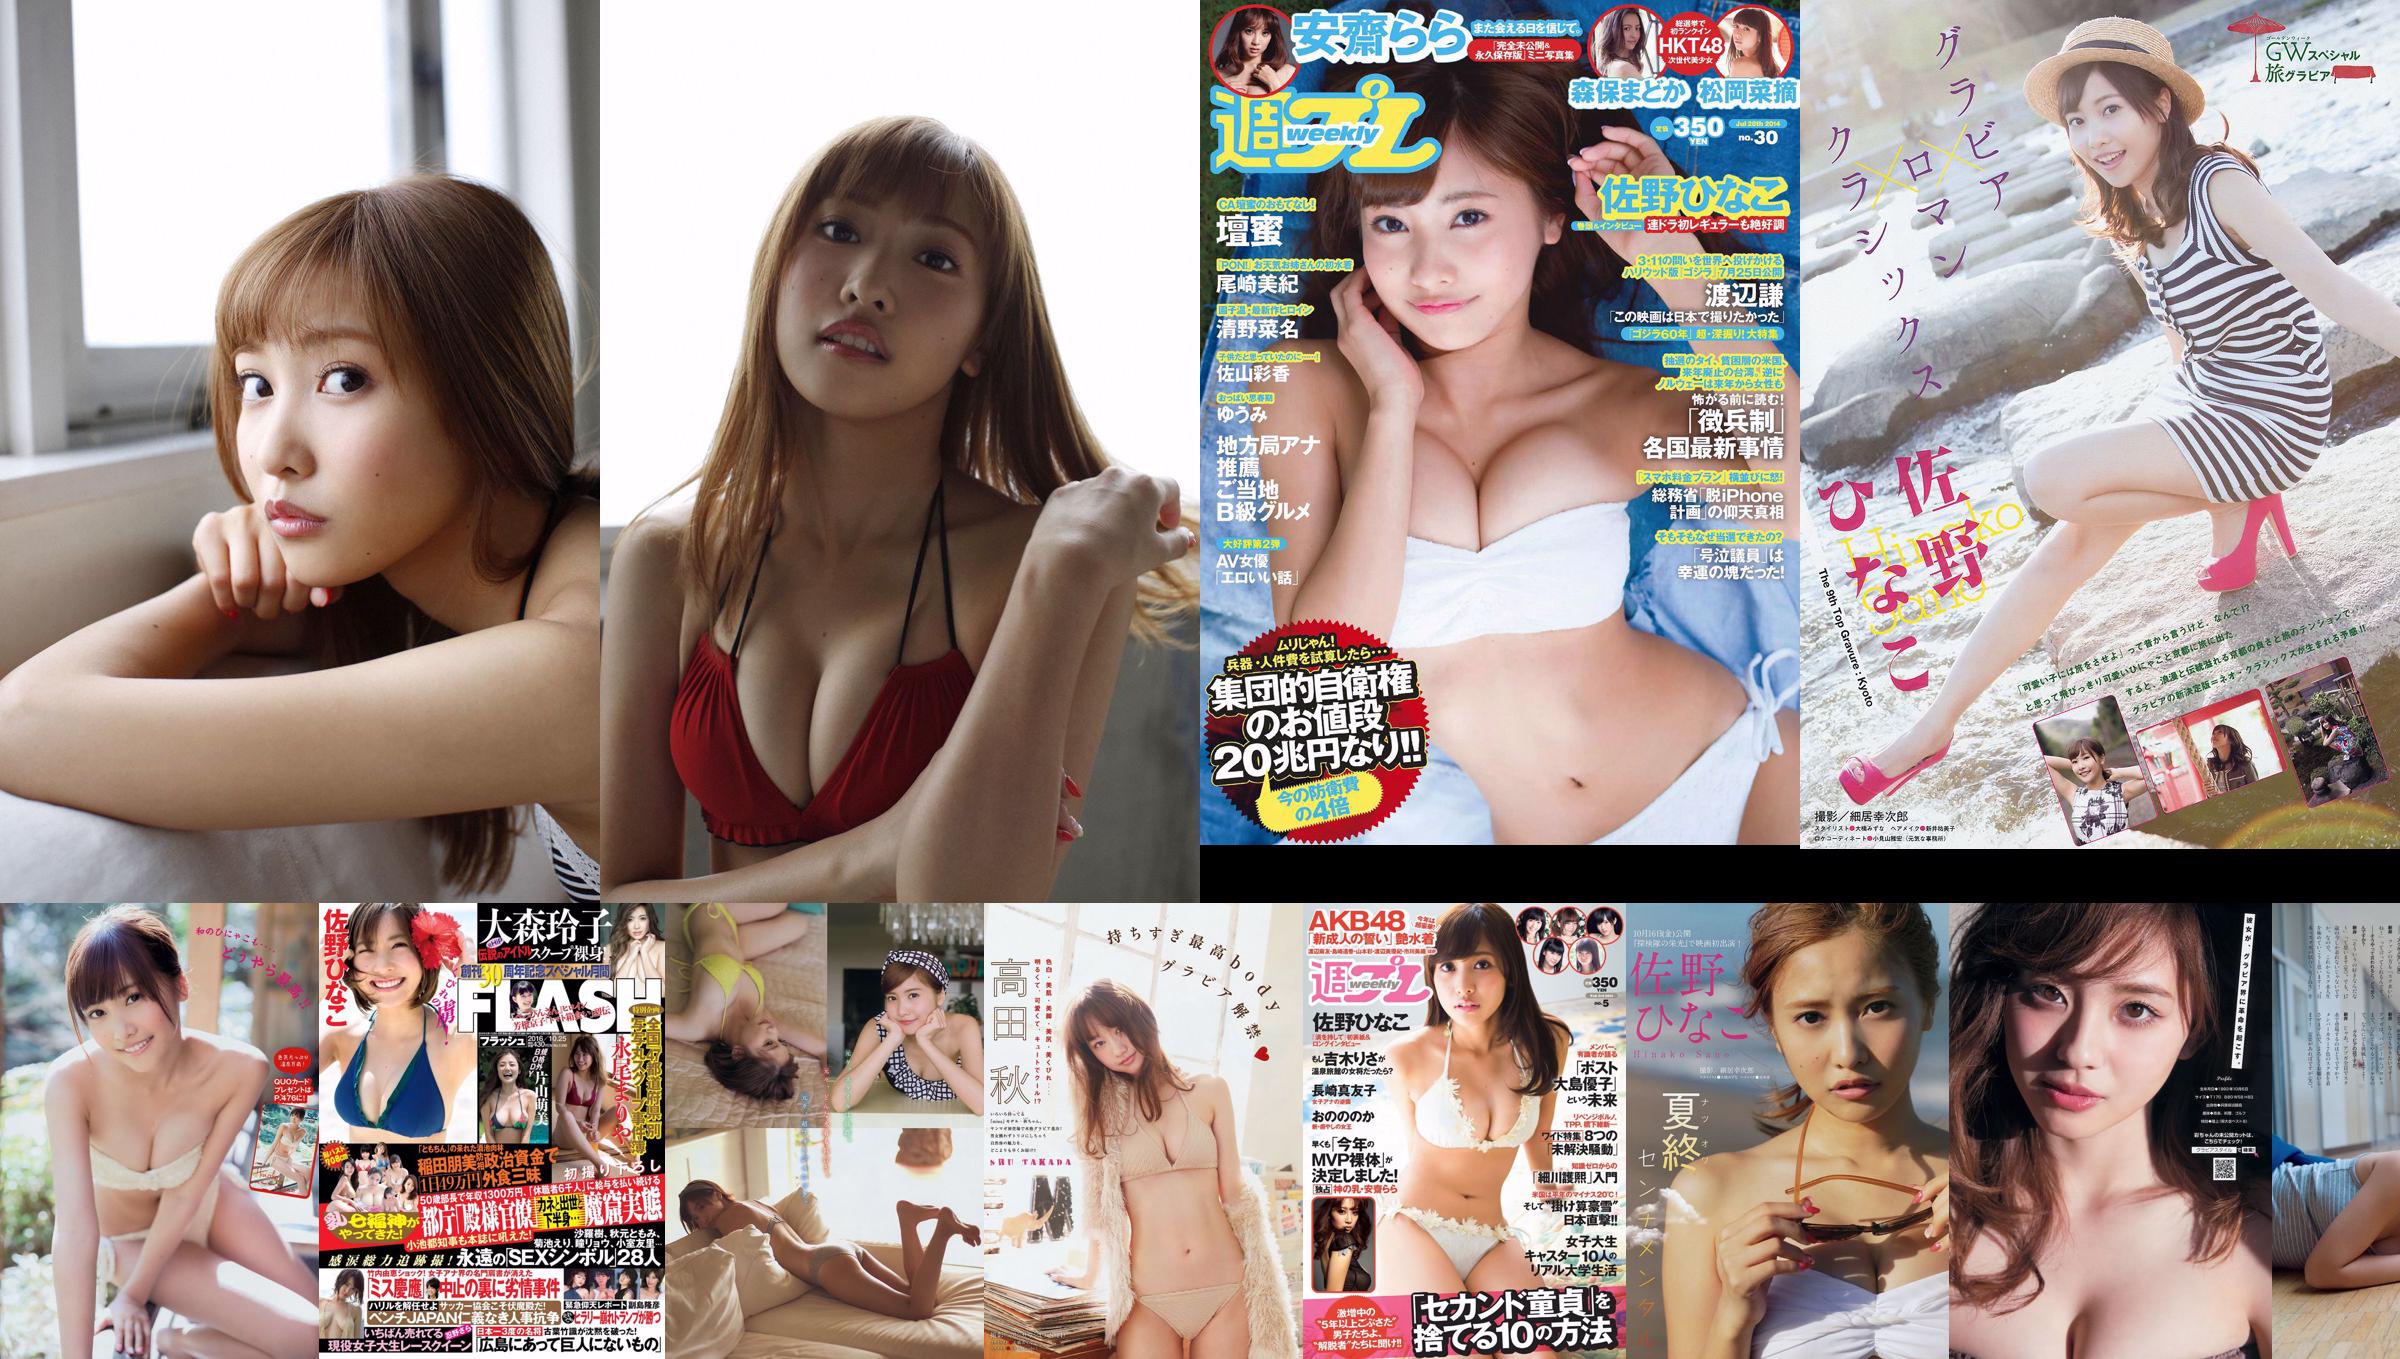 [Young Magazine] Hinako Sano Kana Fujita 2015 No.33 Photographie No.1b2d8b Page 4